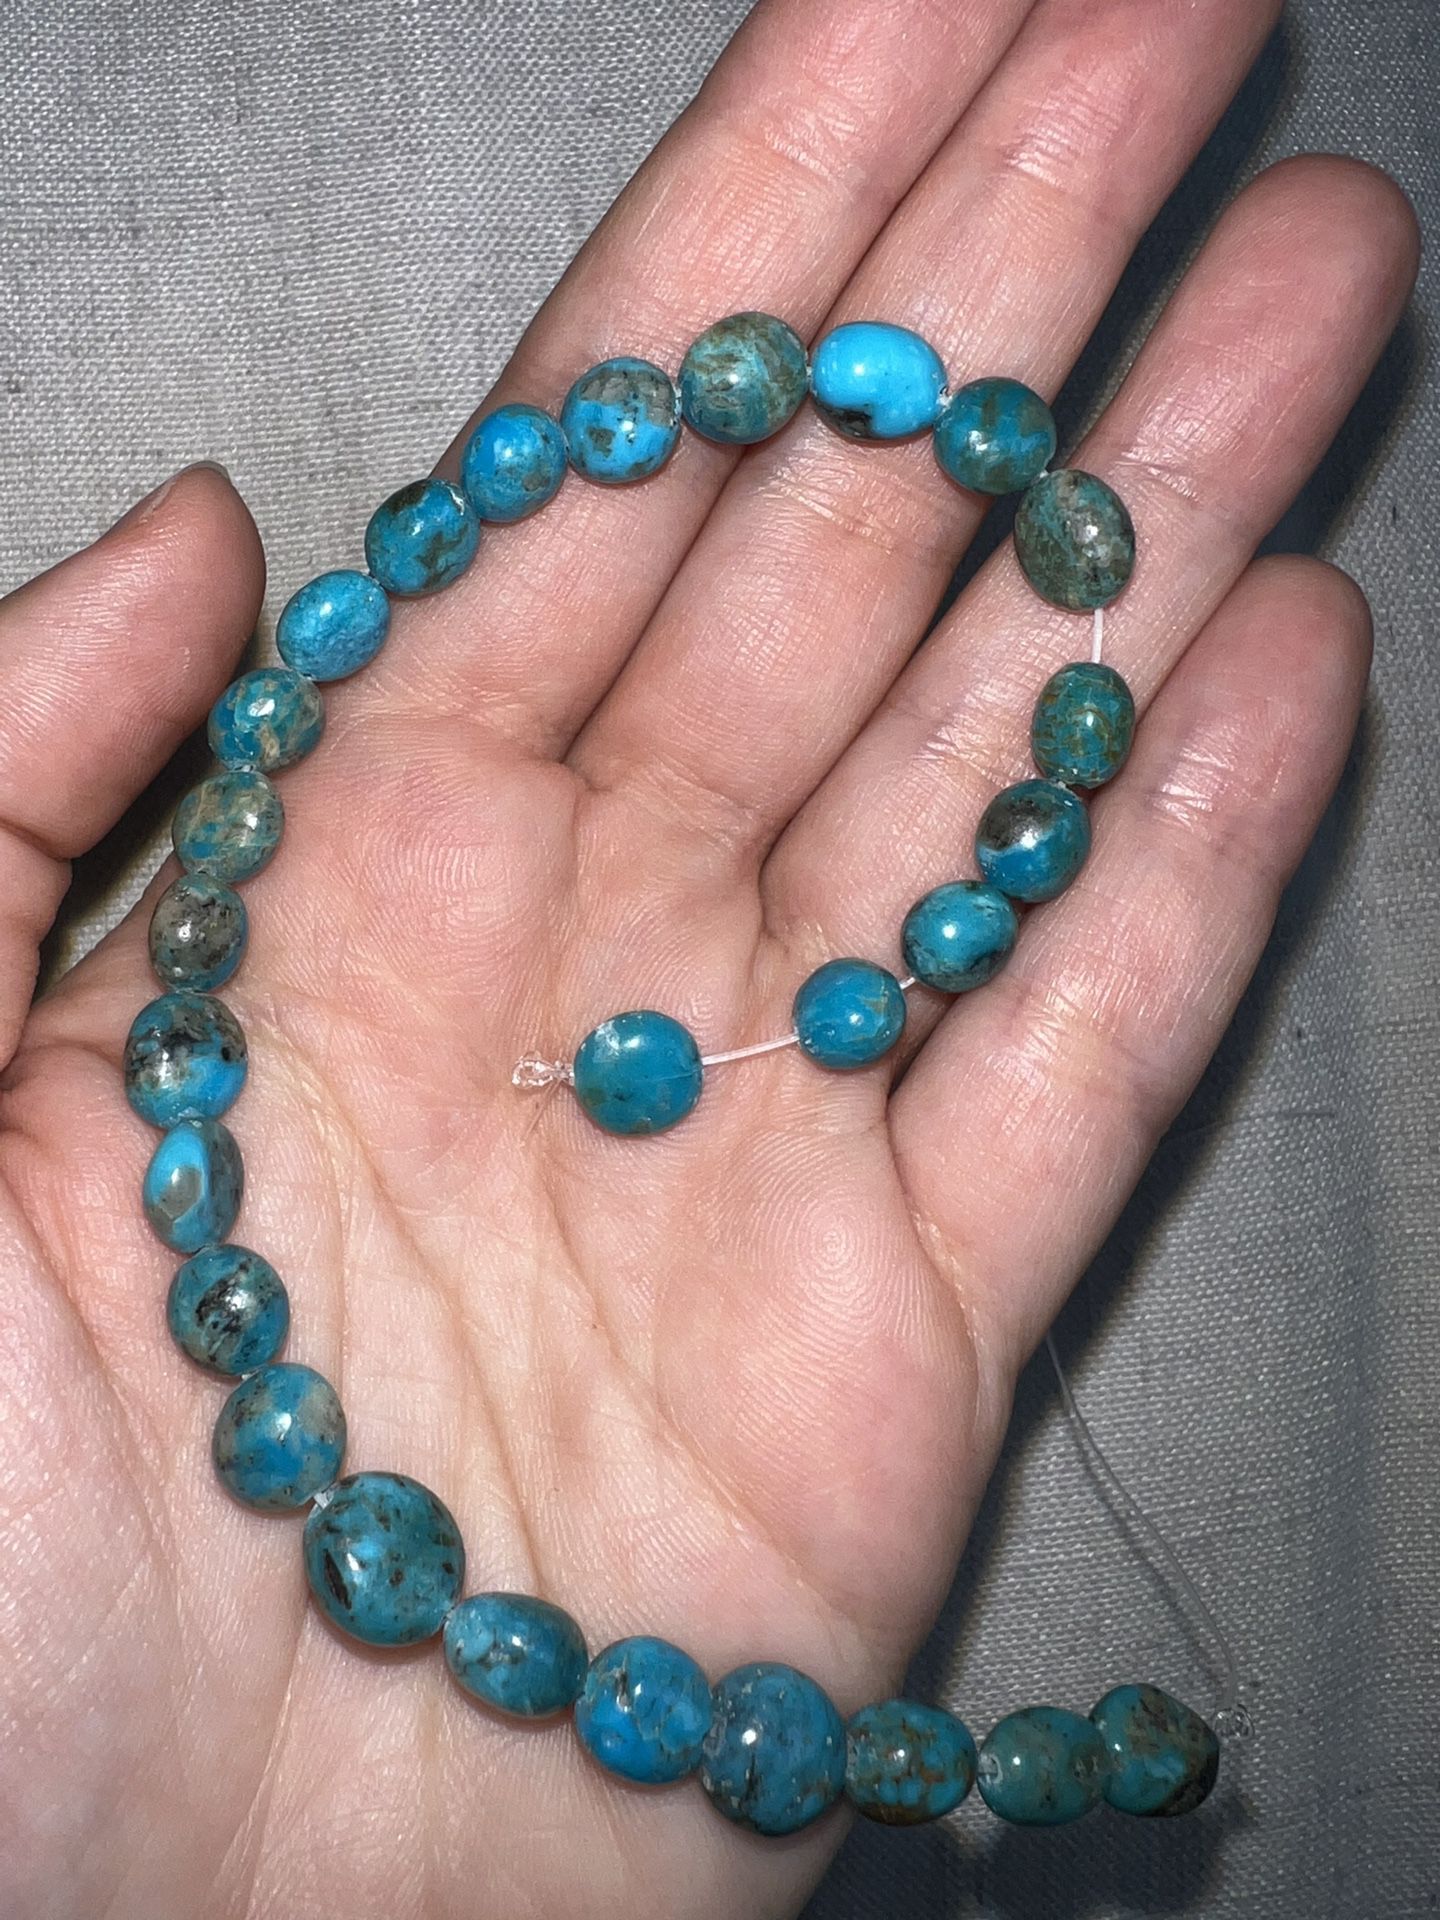 Kingman Turquoise Beads 